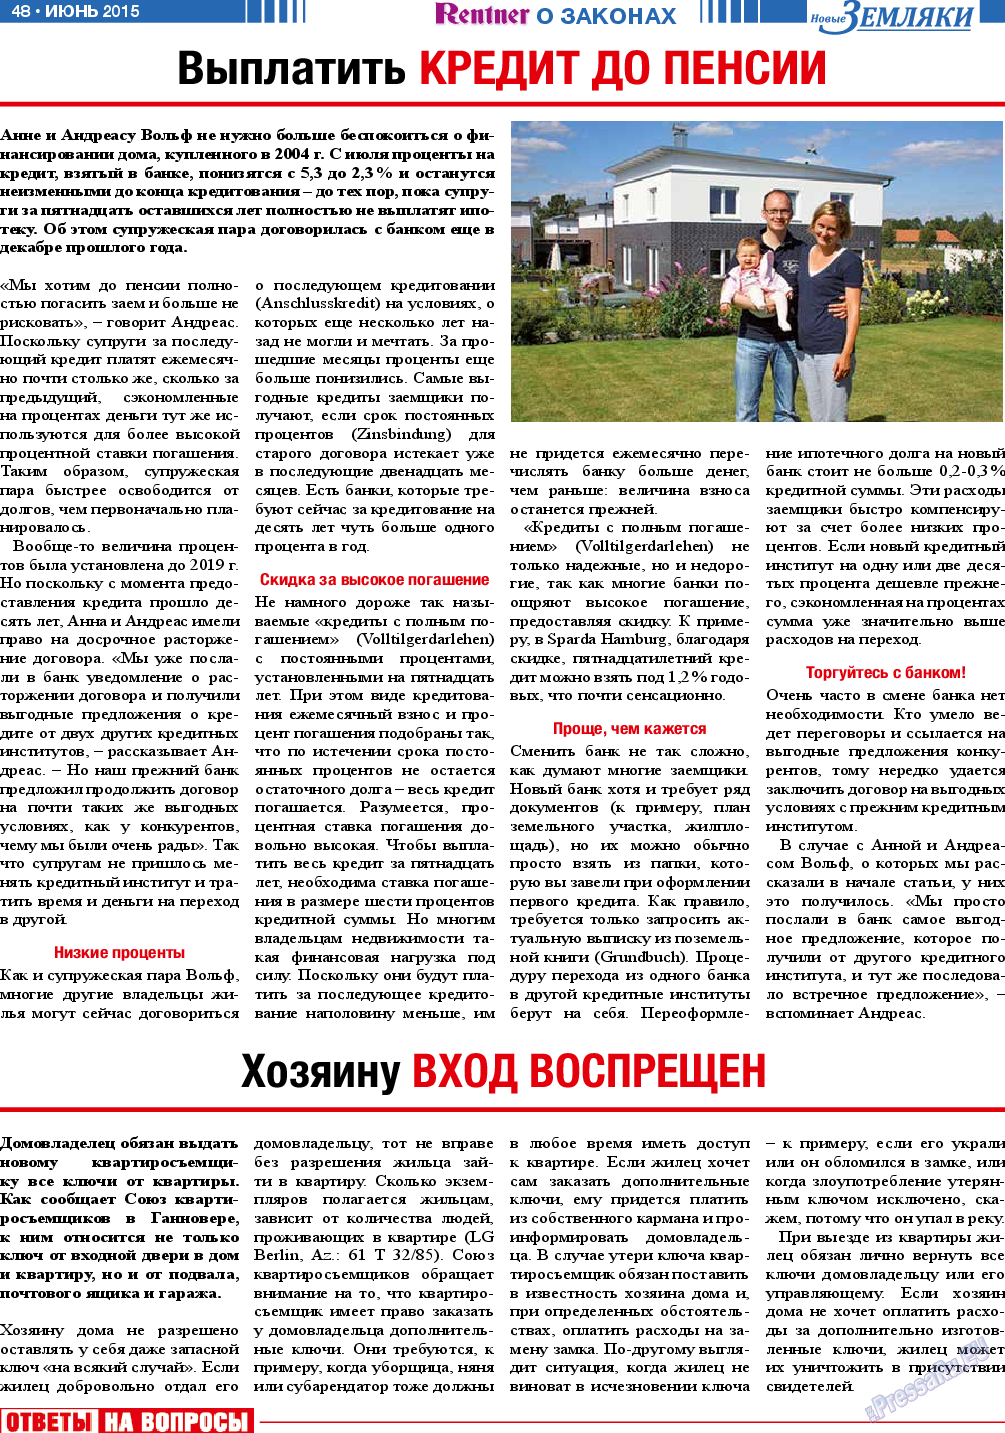 Новые Земляки, газета. 2015 №6 стр.48